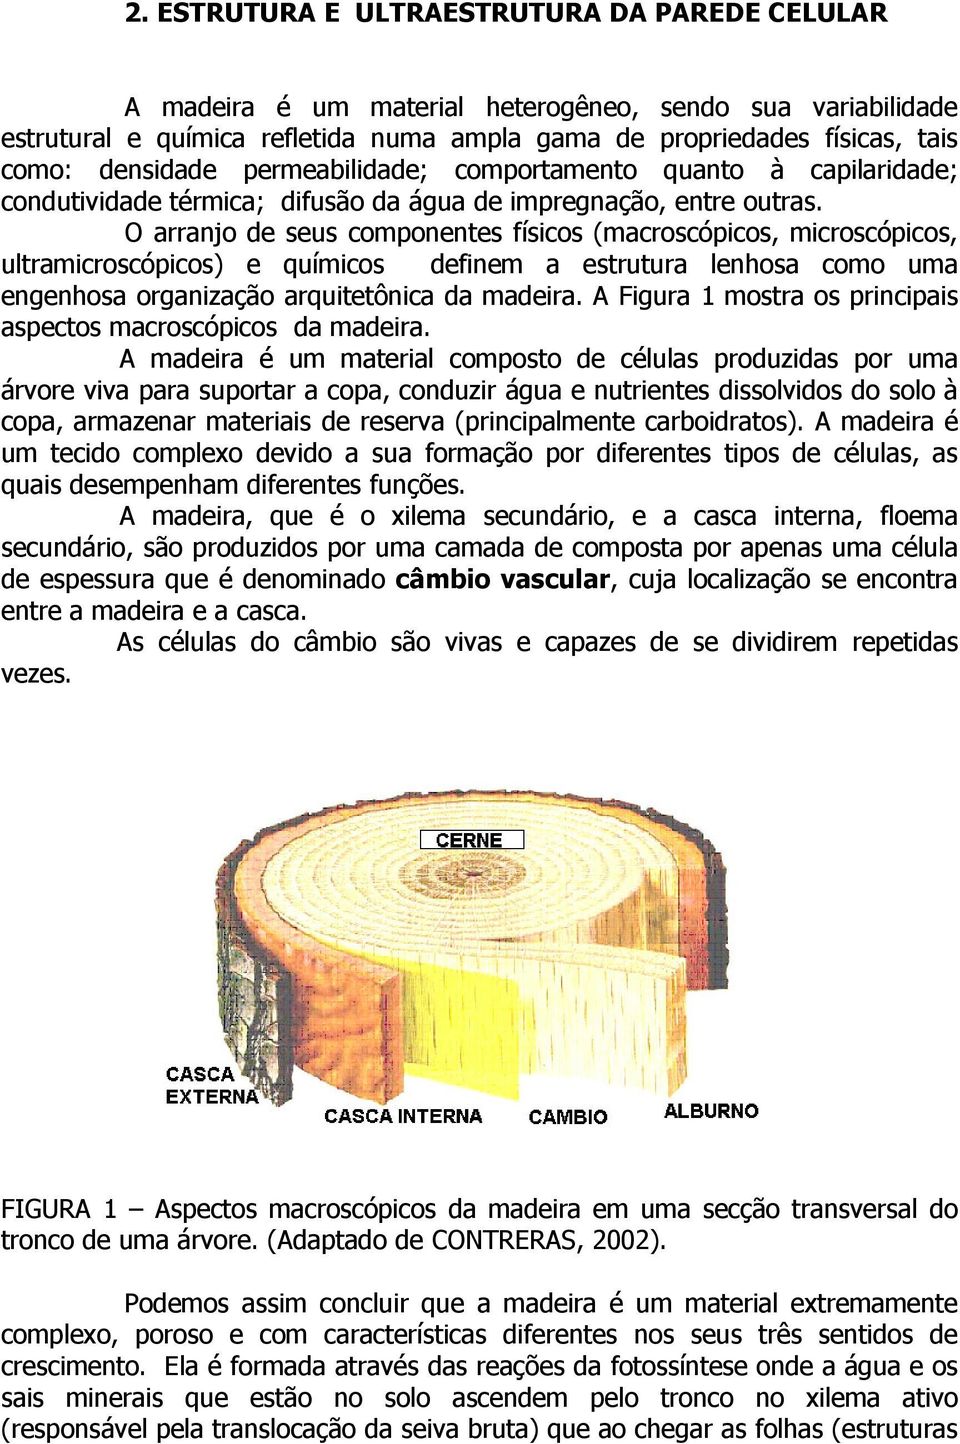 O arranjo de seus componentes físicos (macroscópicos, microscópicos, ultramicroscópicos) e químicos definem a estrutura lenhosa como uma engenhosa organização arquitetônica da madeira.